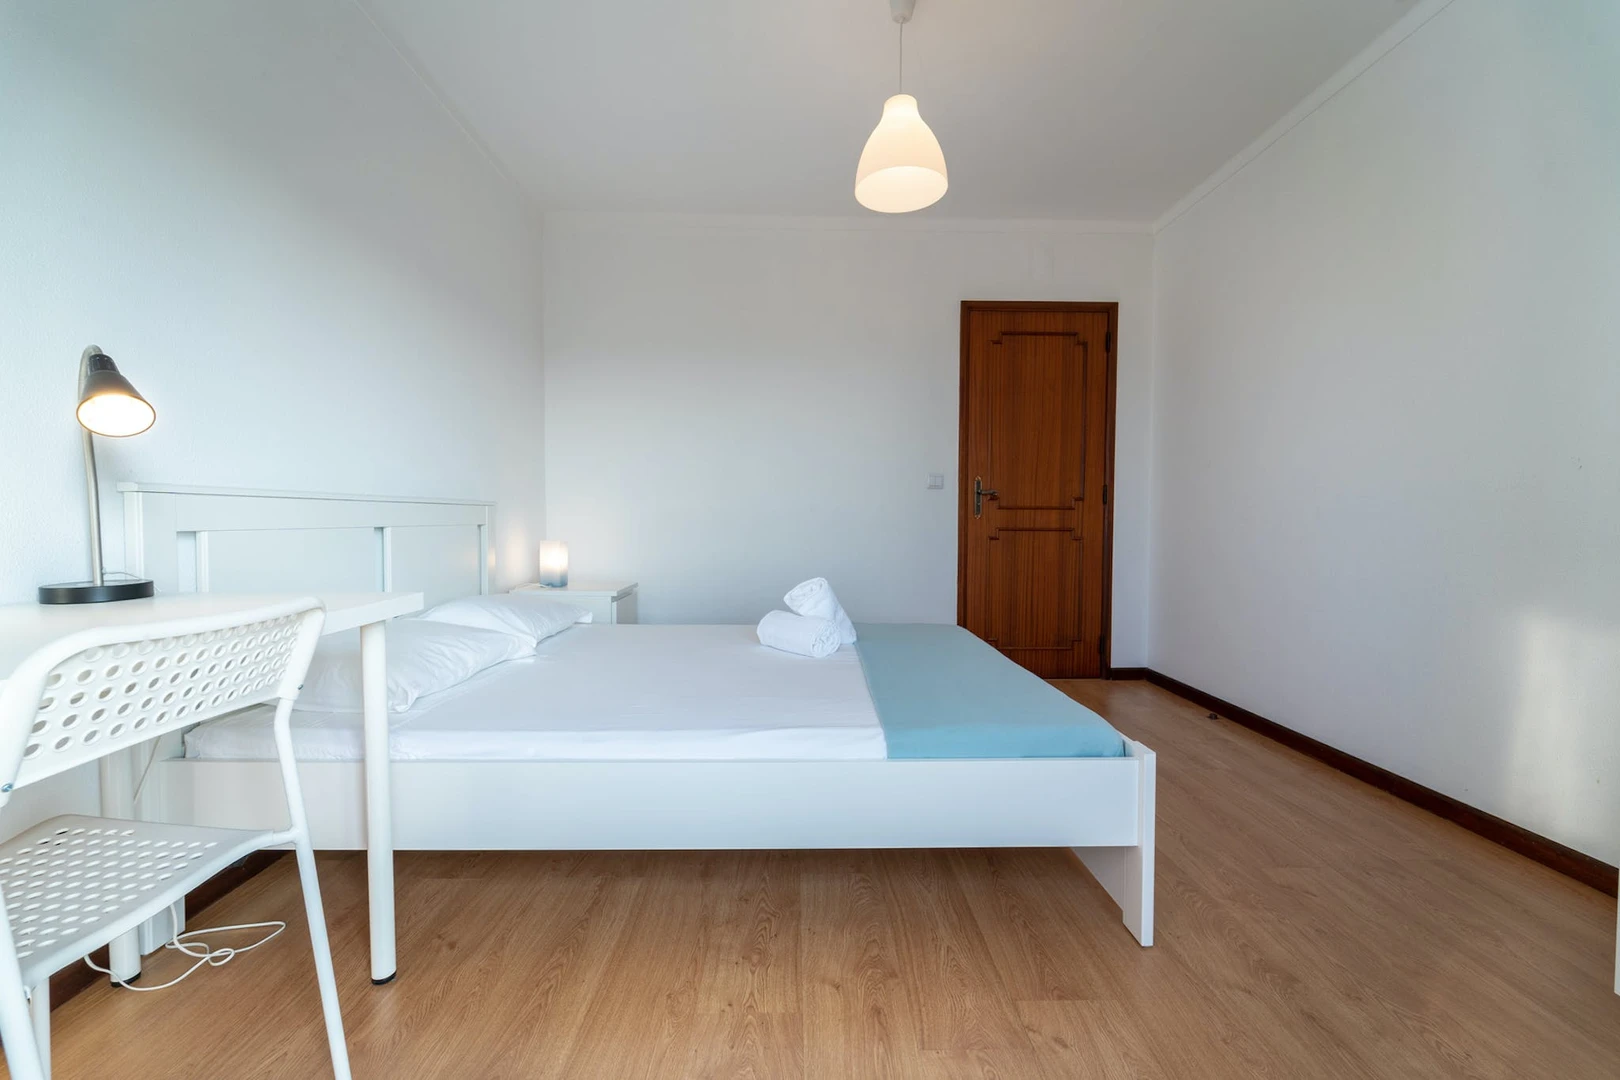 Alquiler de habitaciones por meses en Braga